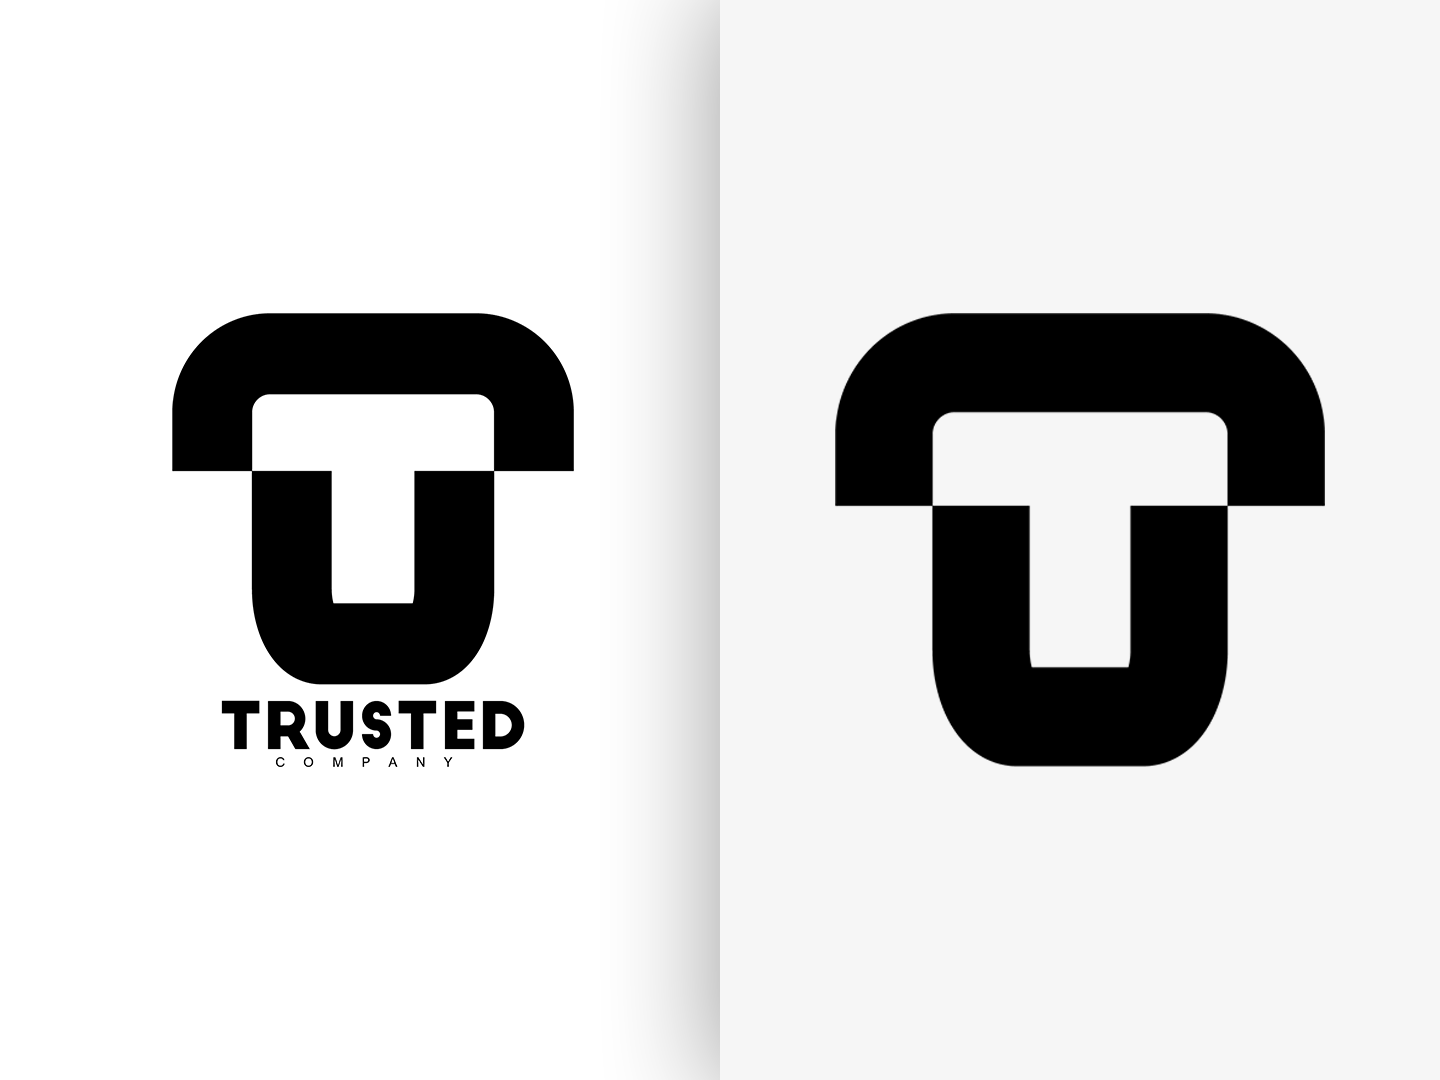 U-shaped Logo - Basic T & U Shaped Logo by Anthony Thach on Dribbble